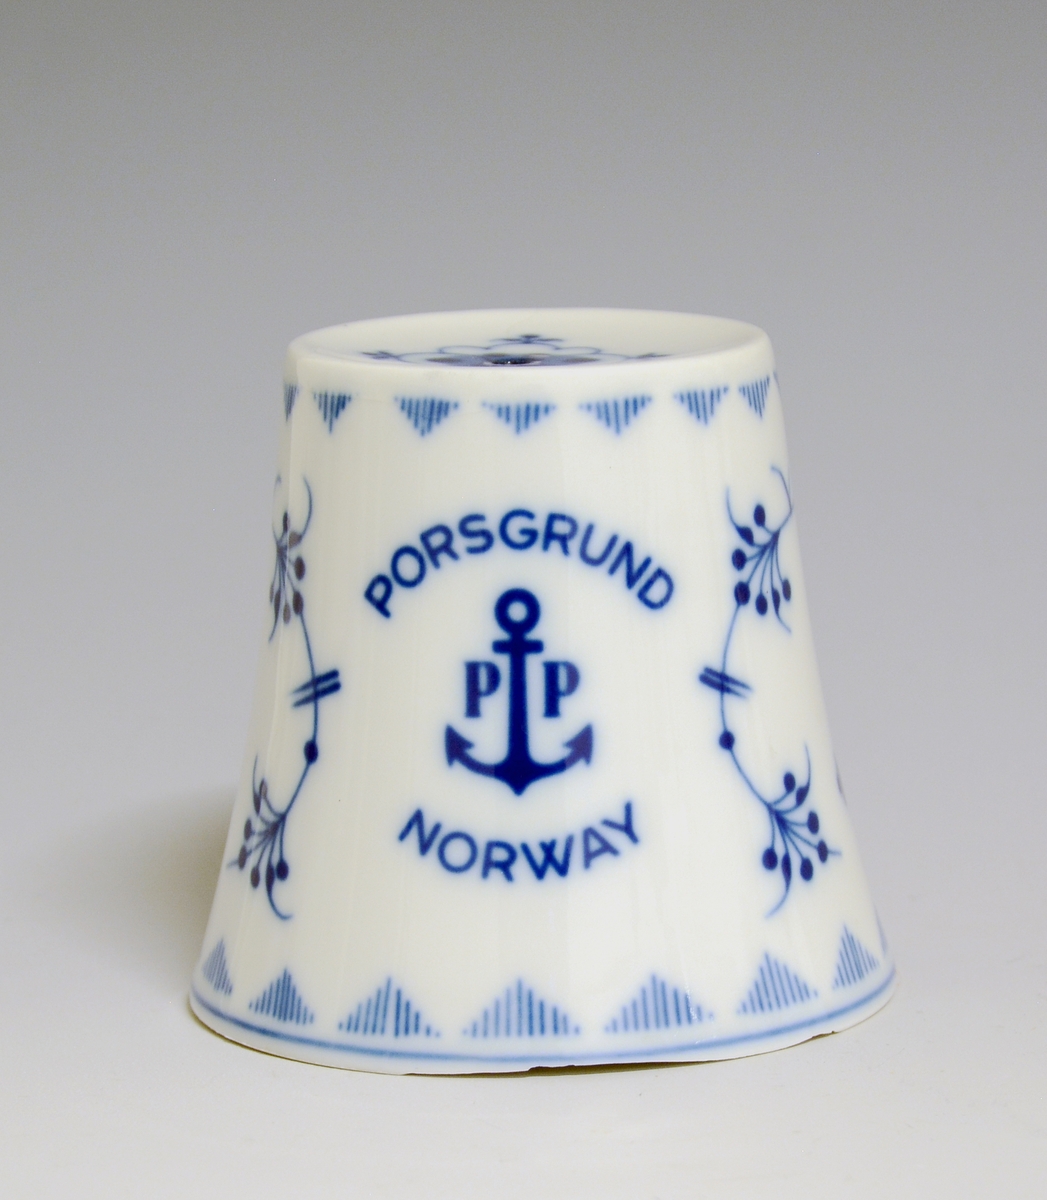 Bjelle av porselen med hvit glasur. Dekorert med en forstørret utgave av stråmønsteret og Porsgrunds Porselænsfabriks logo som et dekorelement, anker og påskriften "Porsgrund PP Norway".
